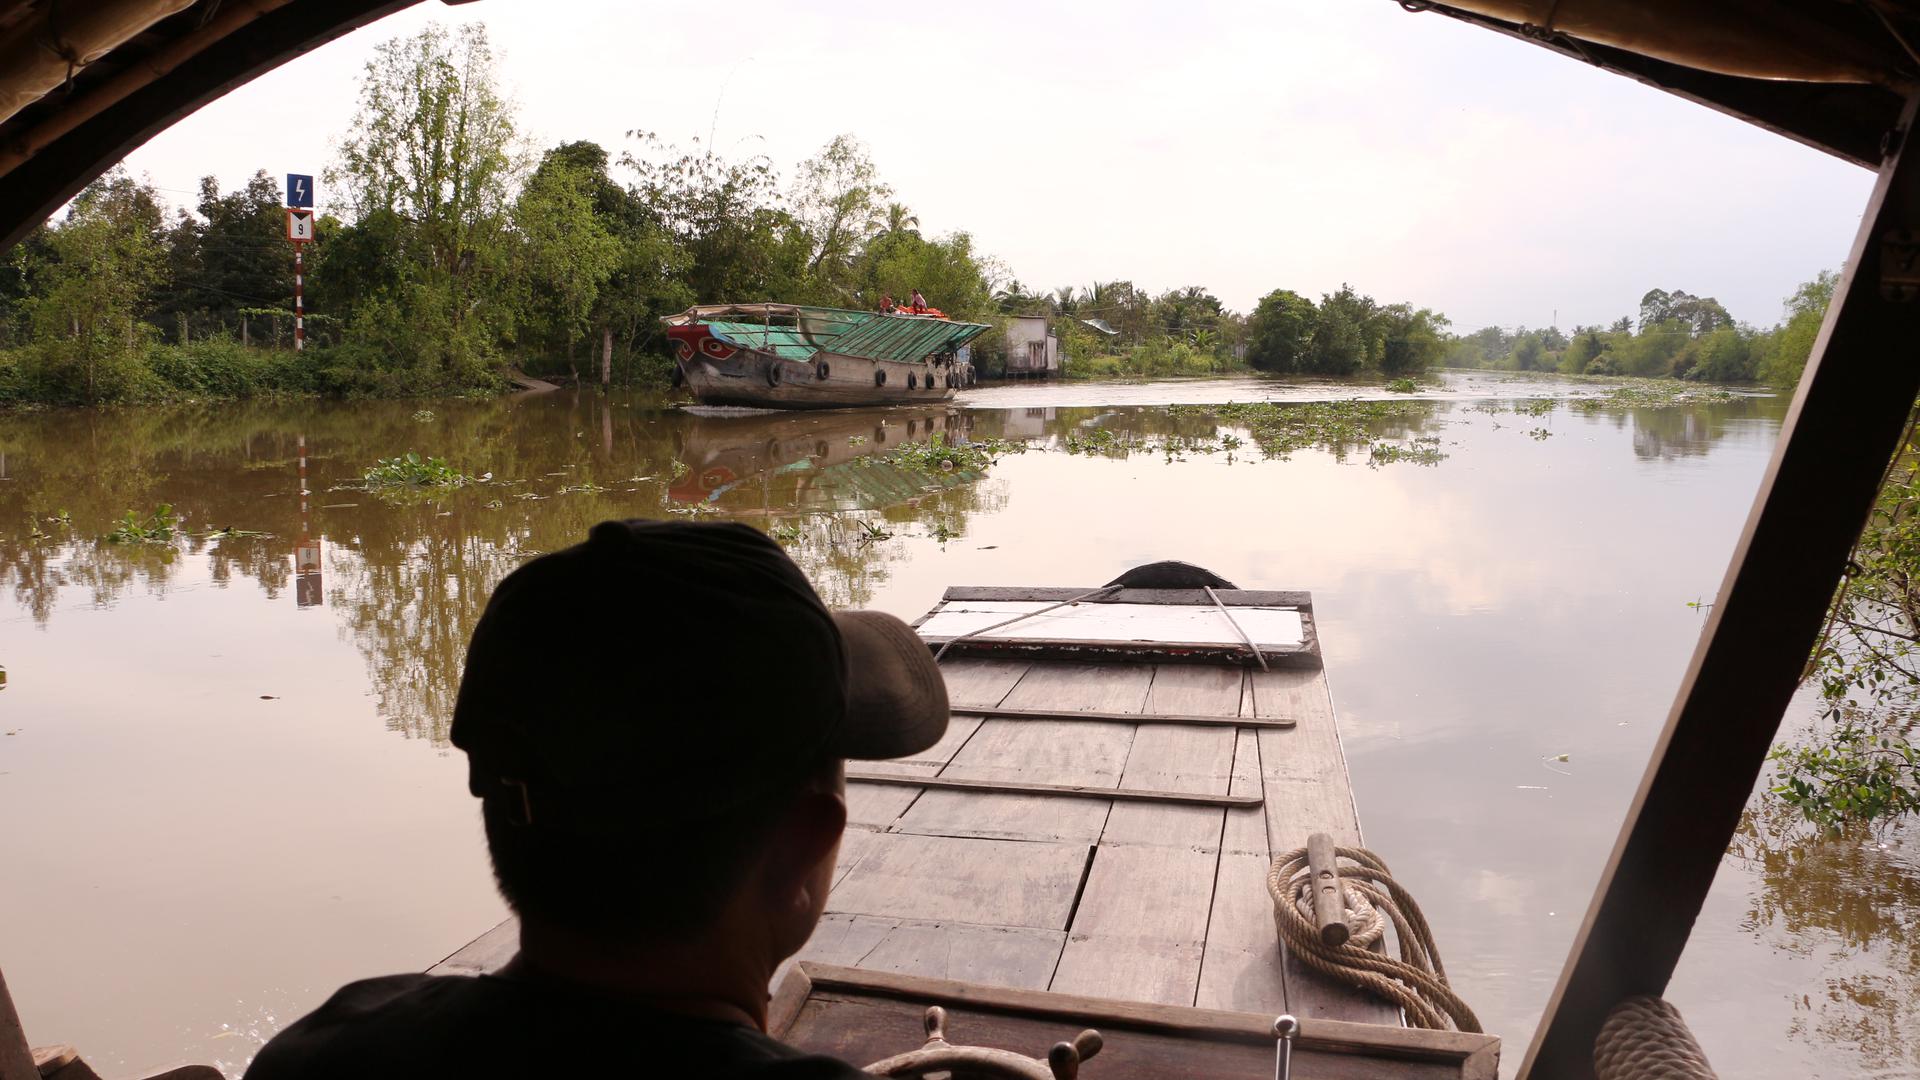 Die Lebensader von Vietnam: Der Mekong, der nach der Zahl seiner Seitenarme „Fluss der neun Drachen“ genannt wird, bietet in seinem verzweigten Delta einen Lebensraum für rund 40 Millionen Menschen. Es gibt Sorgen, dass der mächtige Strom versalzen könnte, weil China flussaufwärts Dämme baut. 